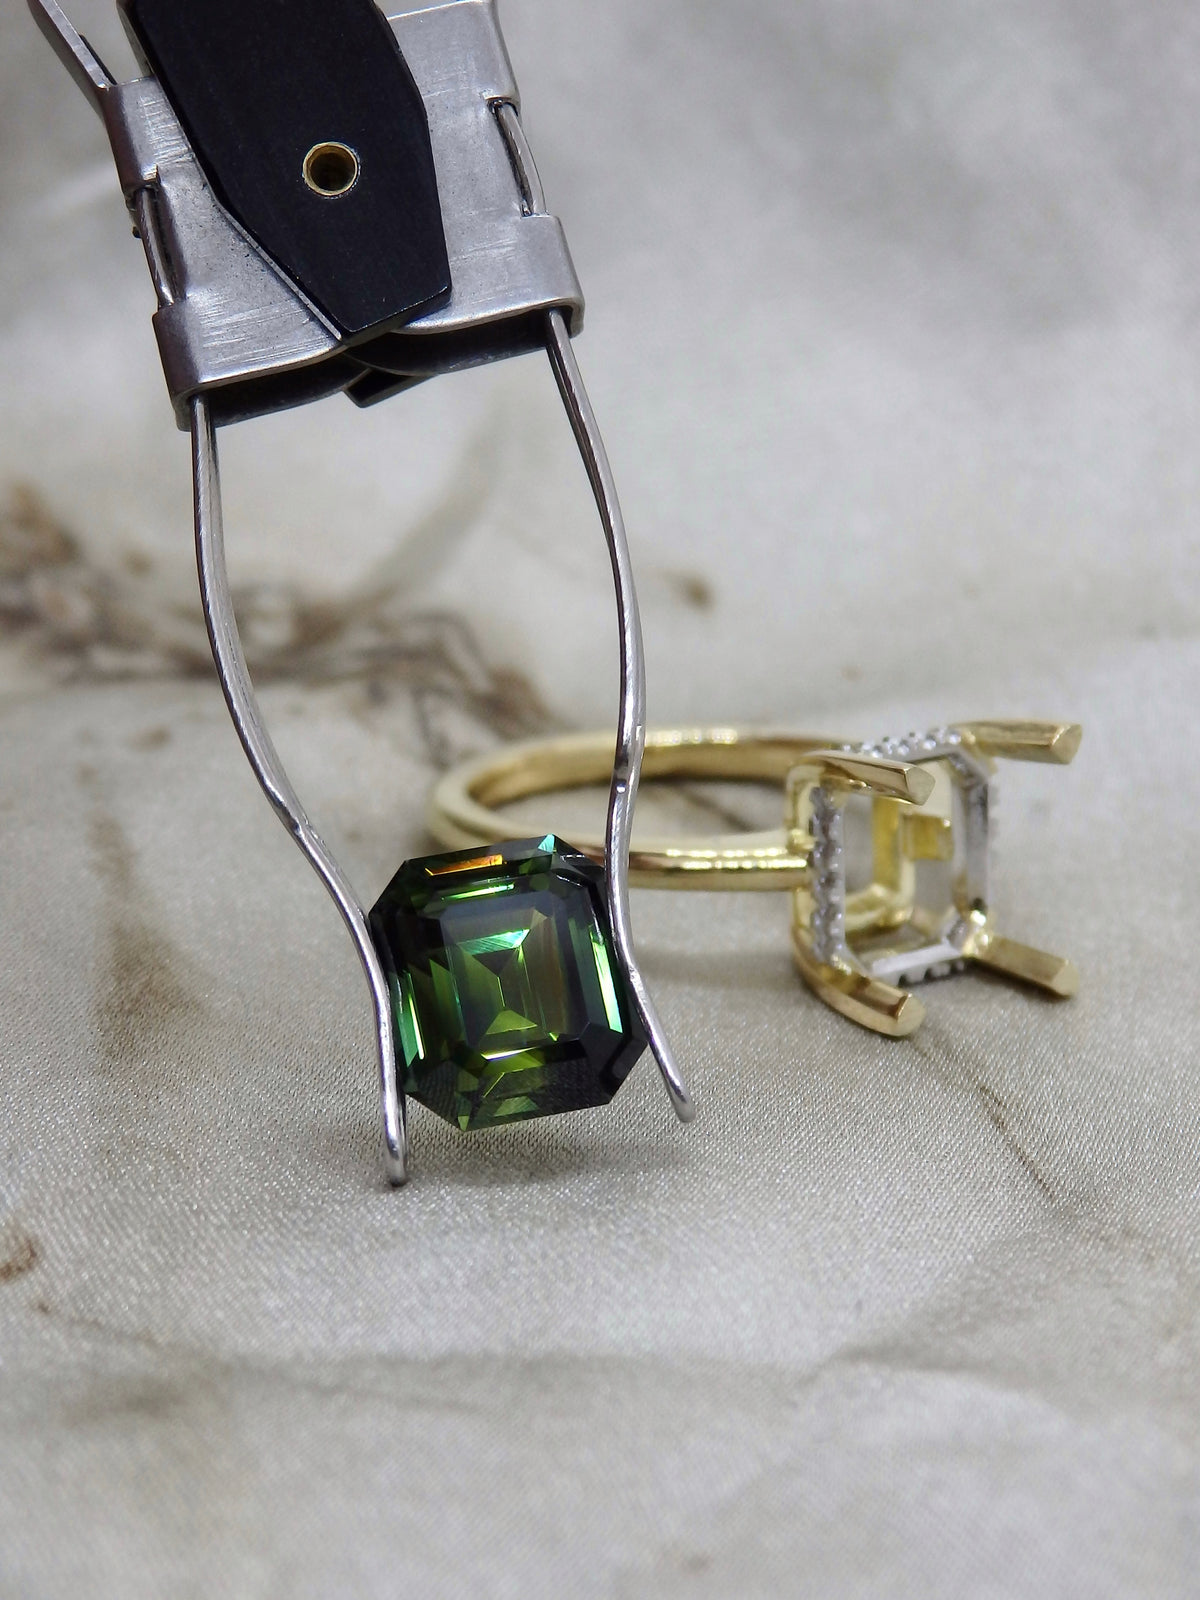 “Eris” 3.53ct Emerald Cut Green Australian Sapphire Hidden Halo Engagement Ring